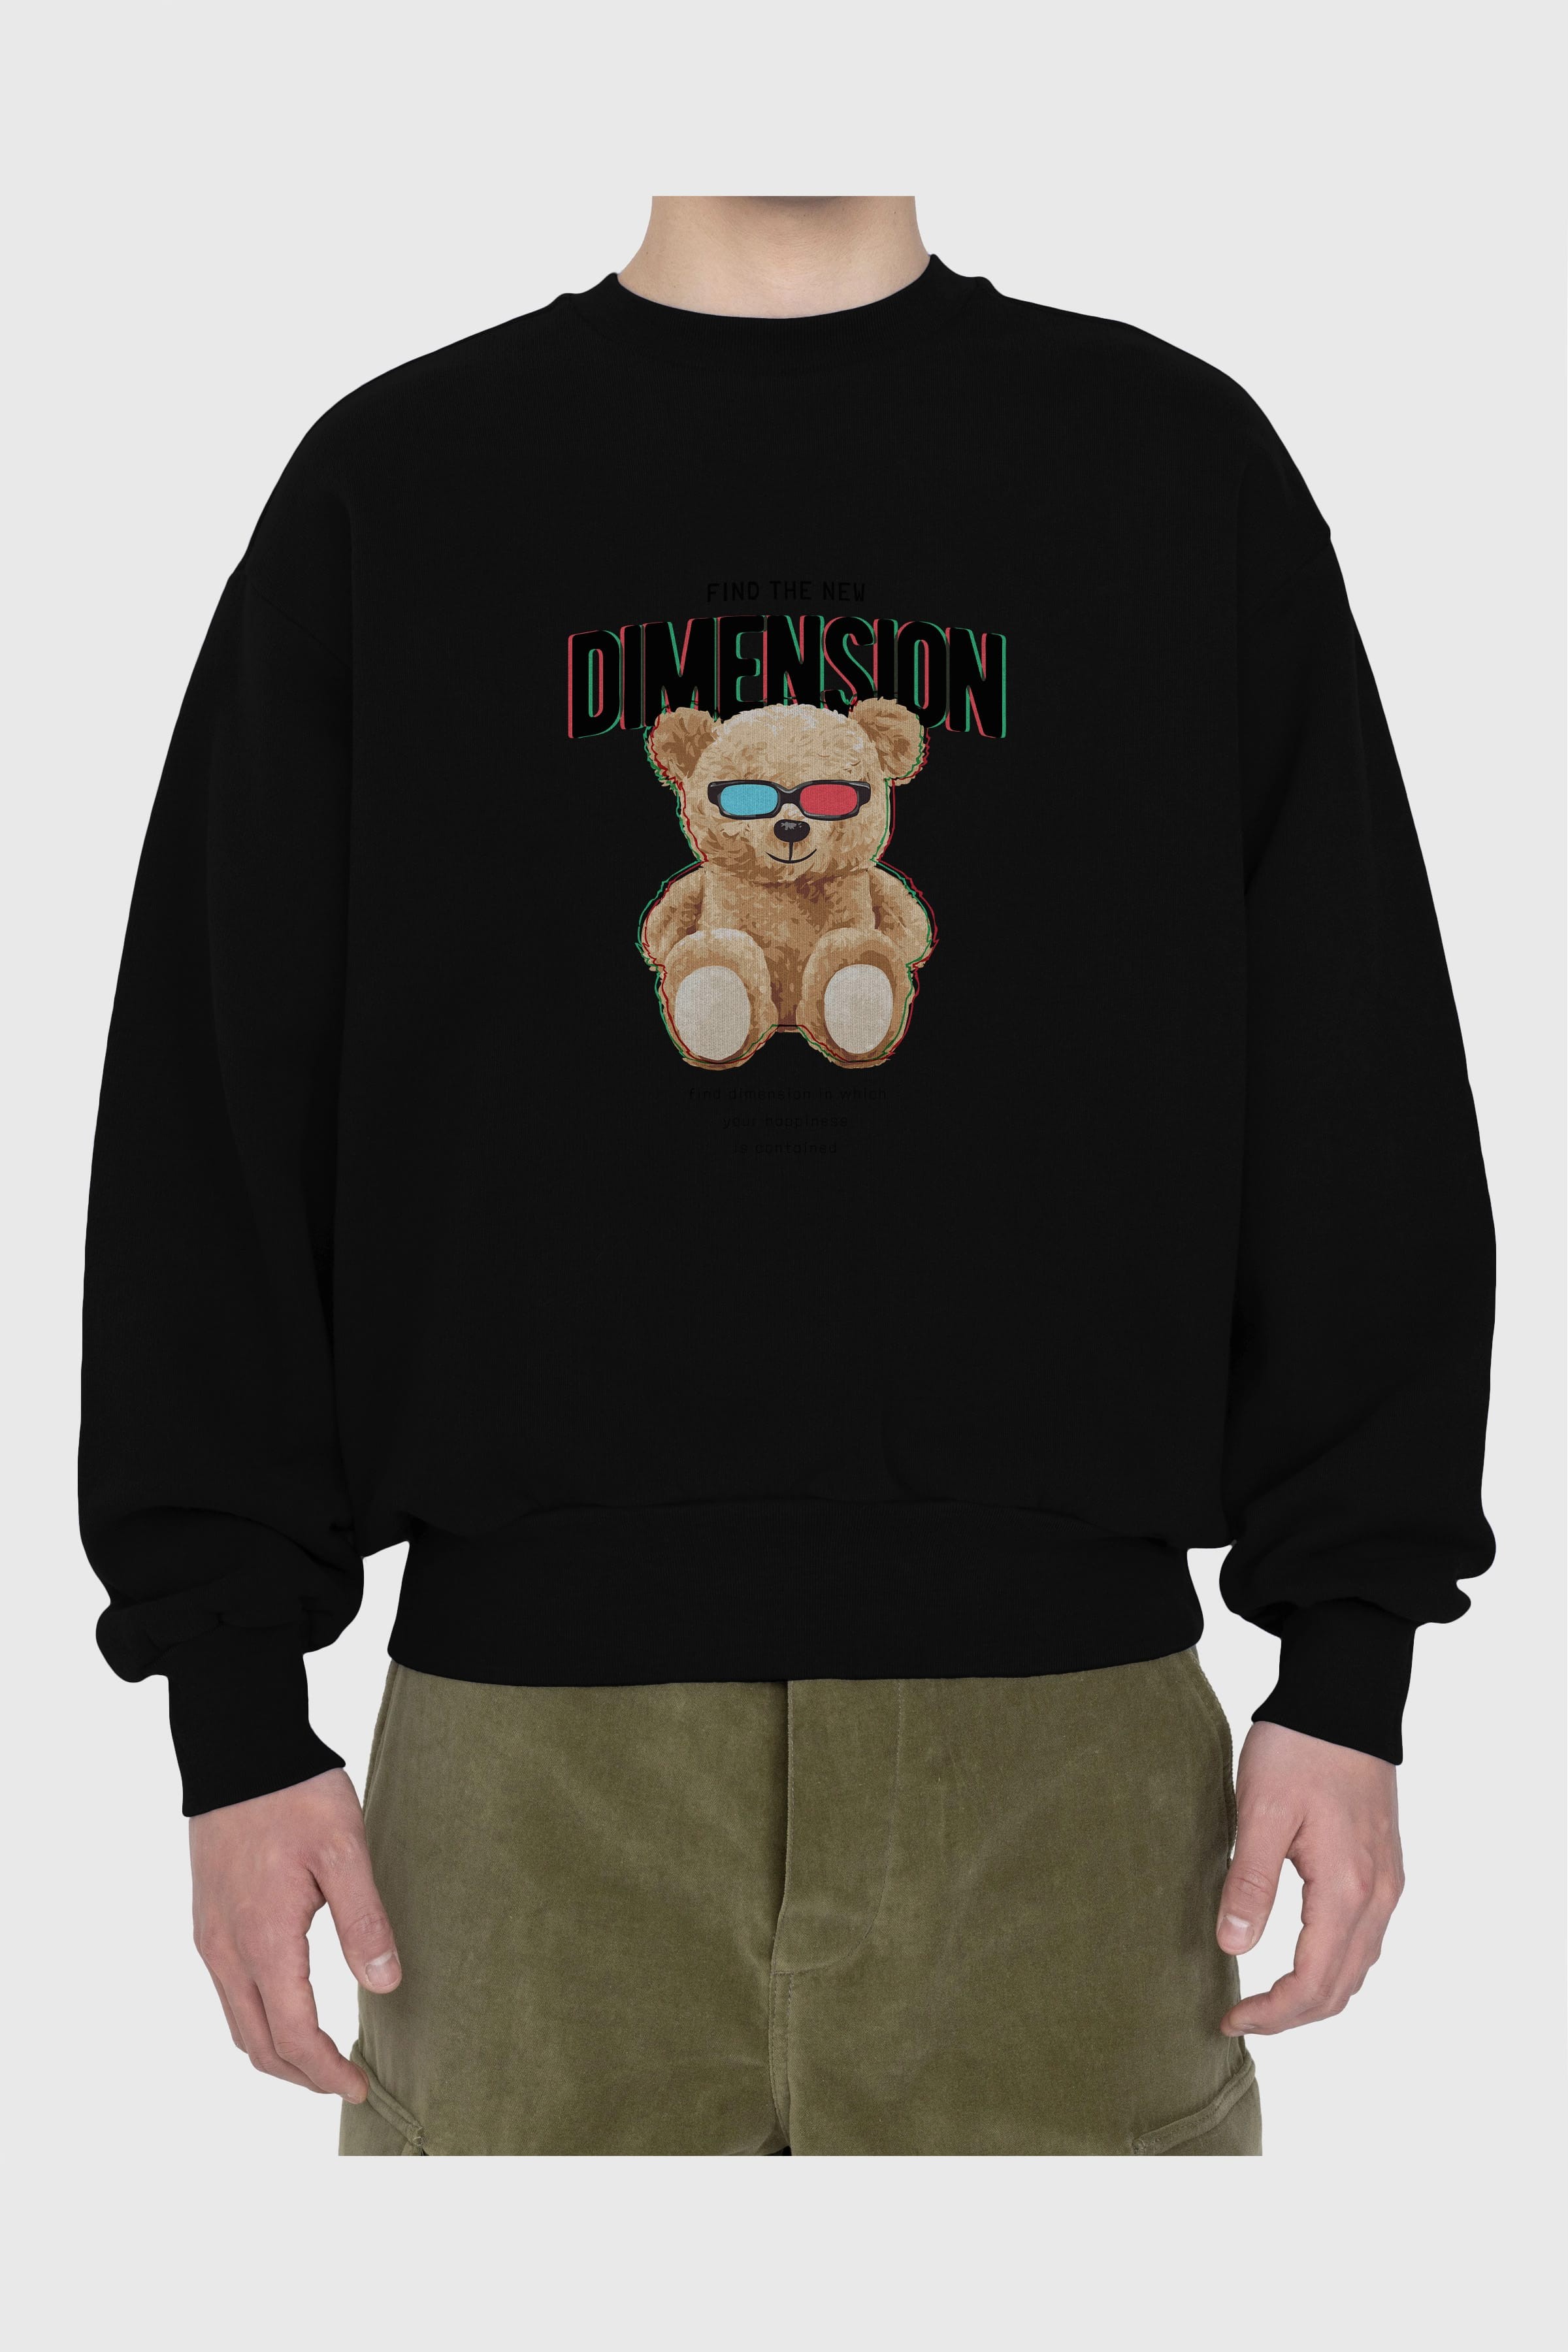 Teddy Bear Dimension Ön Baskılı Oversize Sweatshirt Erkek Kadın Unisex